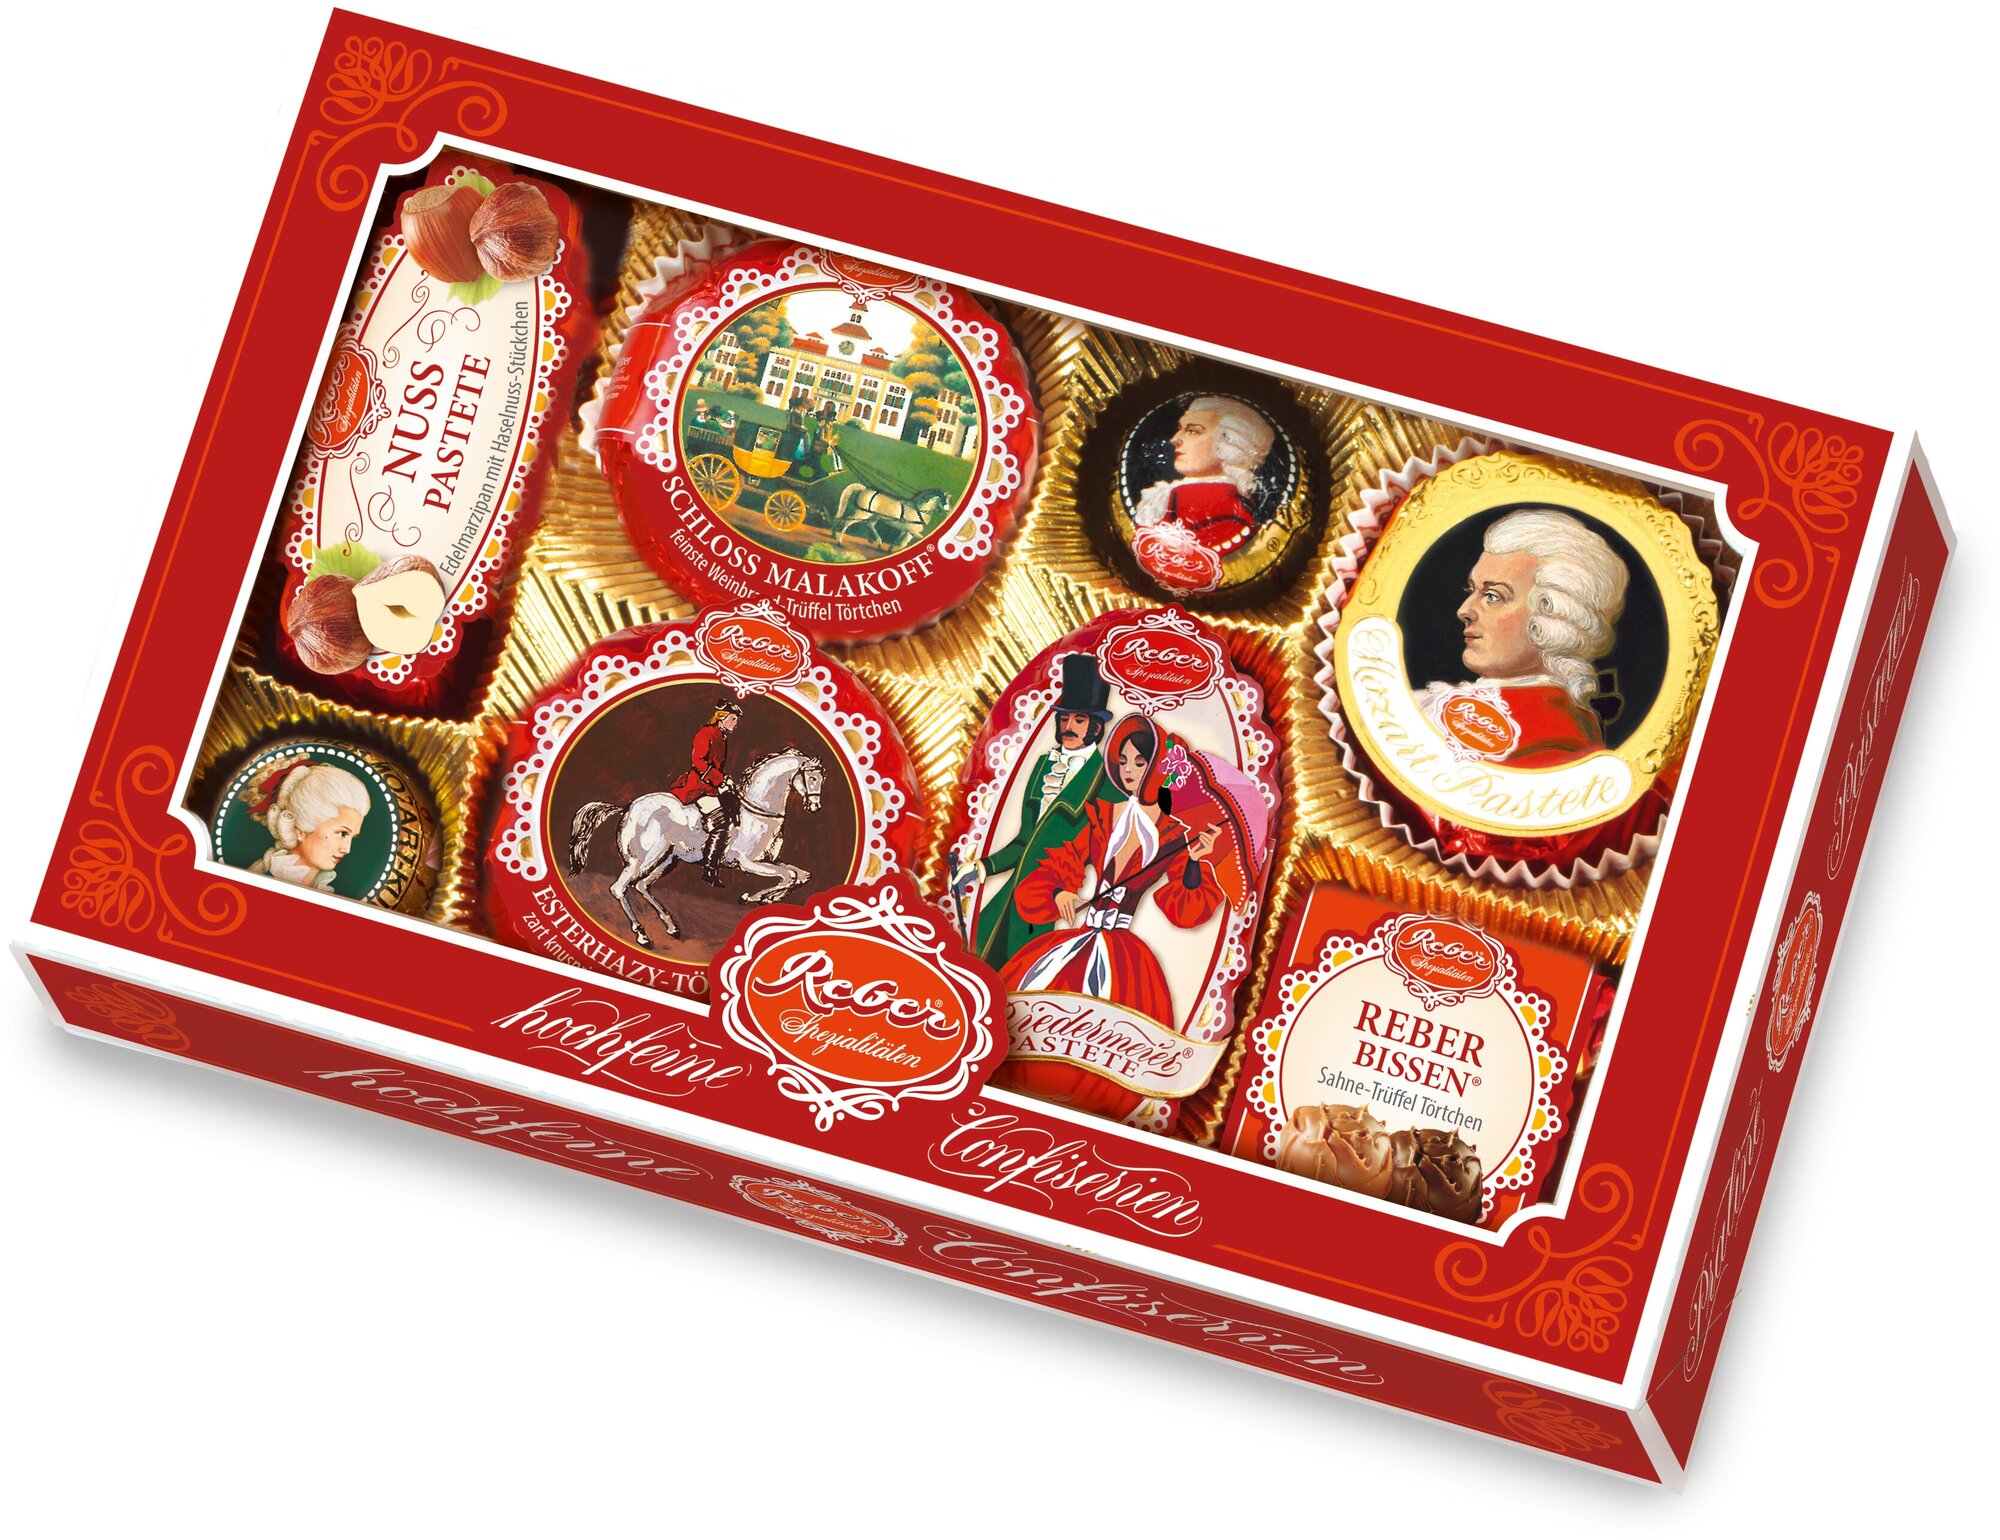 Подарочный набор Reber Моцарт Шоколадные конфеты ассорти с окном, 285 г